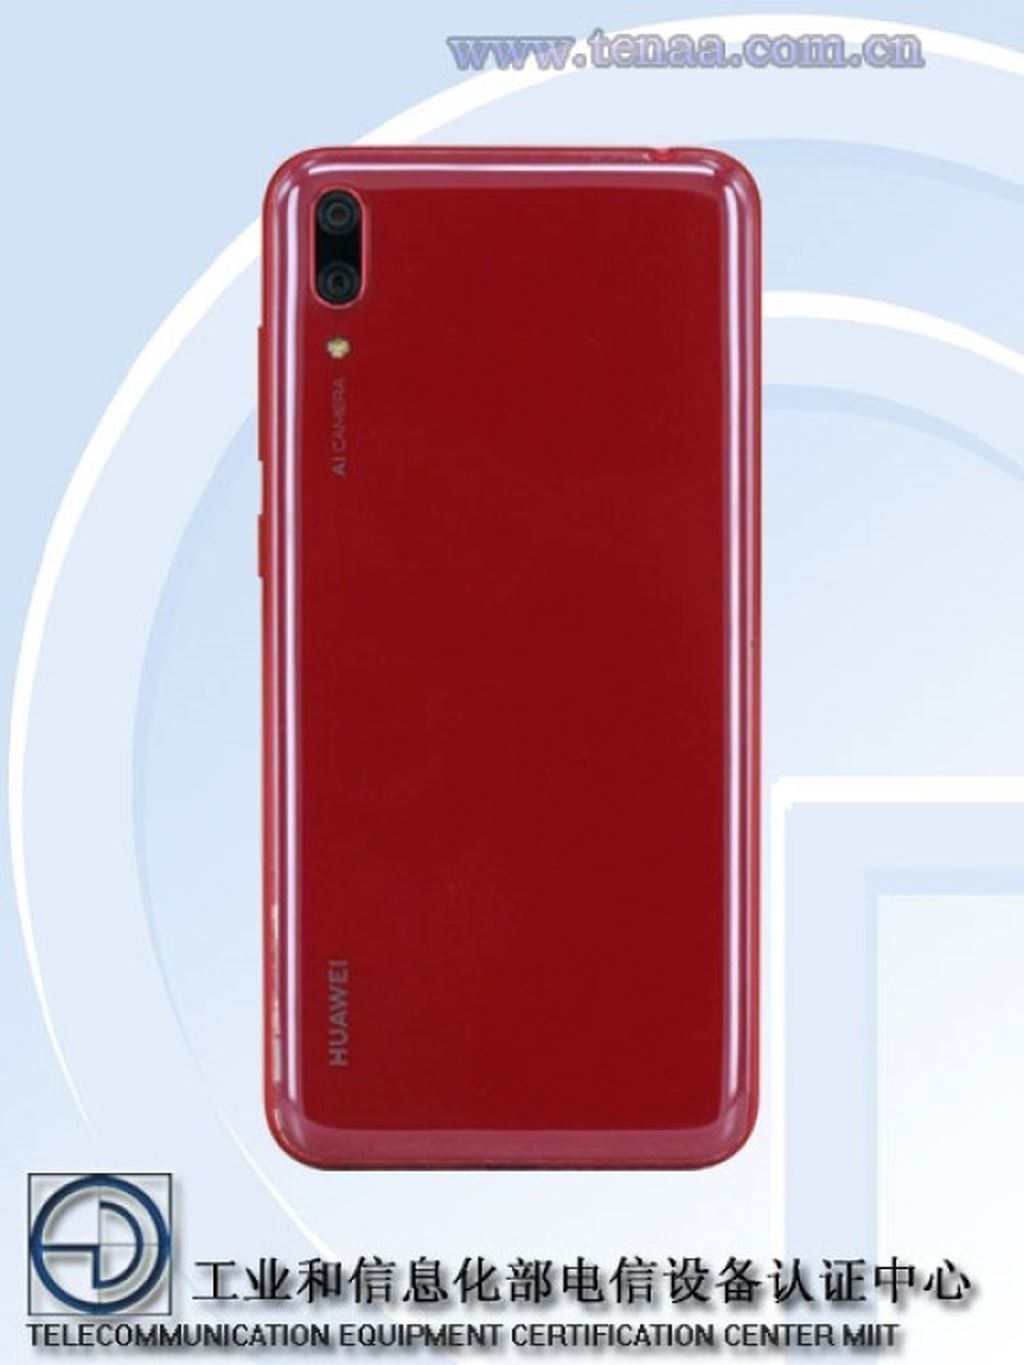 Huawei Enjoy 9 xuất hiện trên cơ sỡ dữ liệu của TENAA ảnh 3